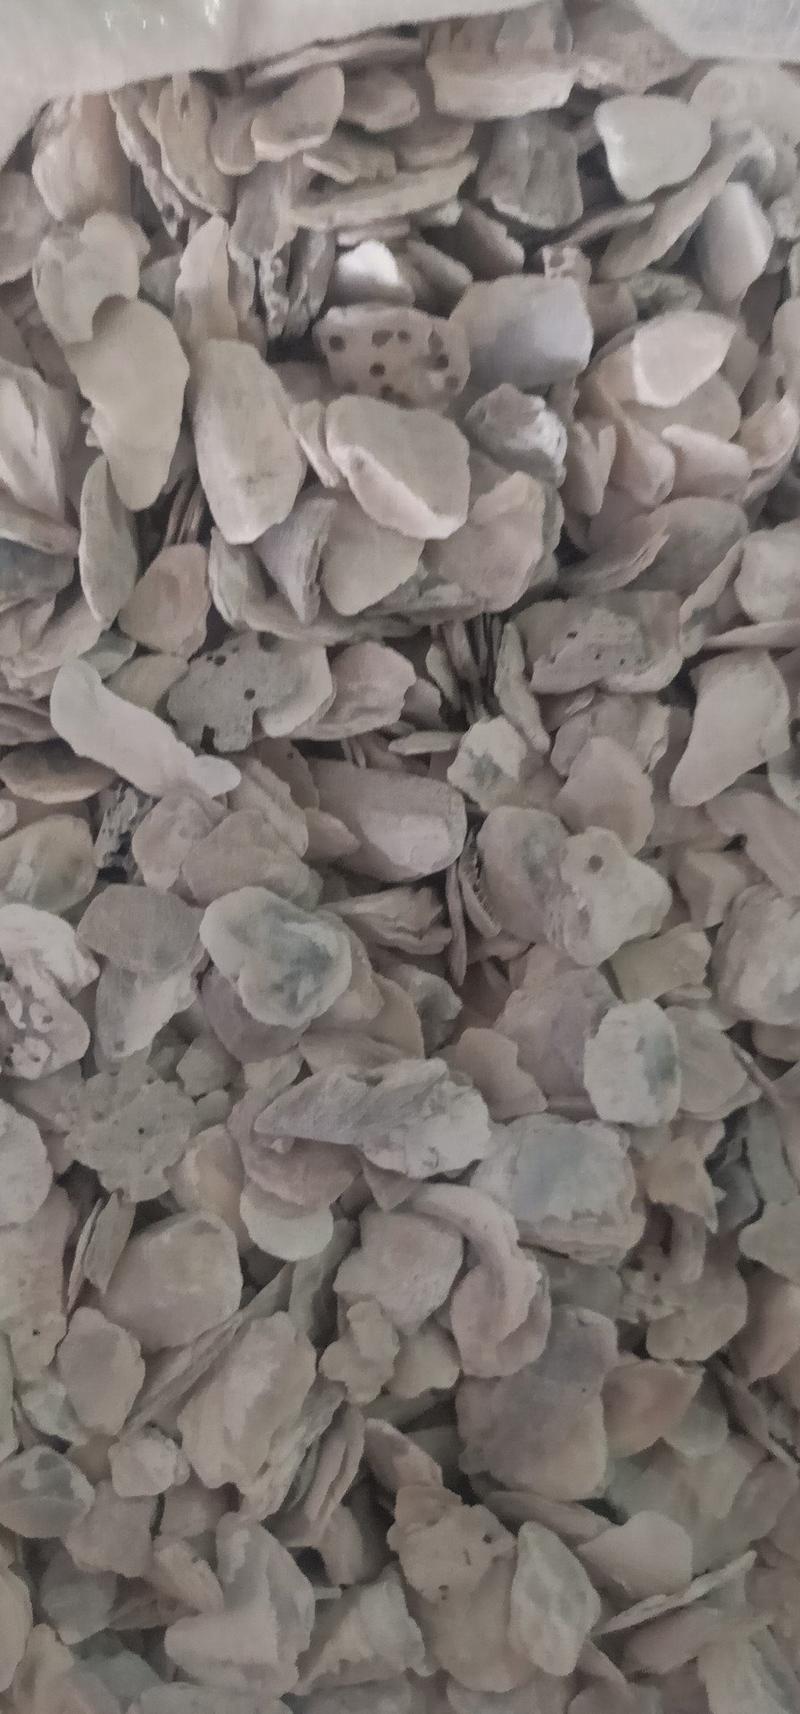 牡蛎药用牡蛎矿石批发零售各种规格中药材